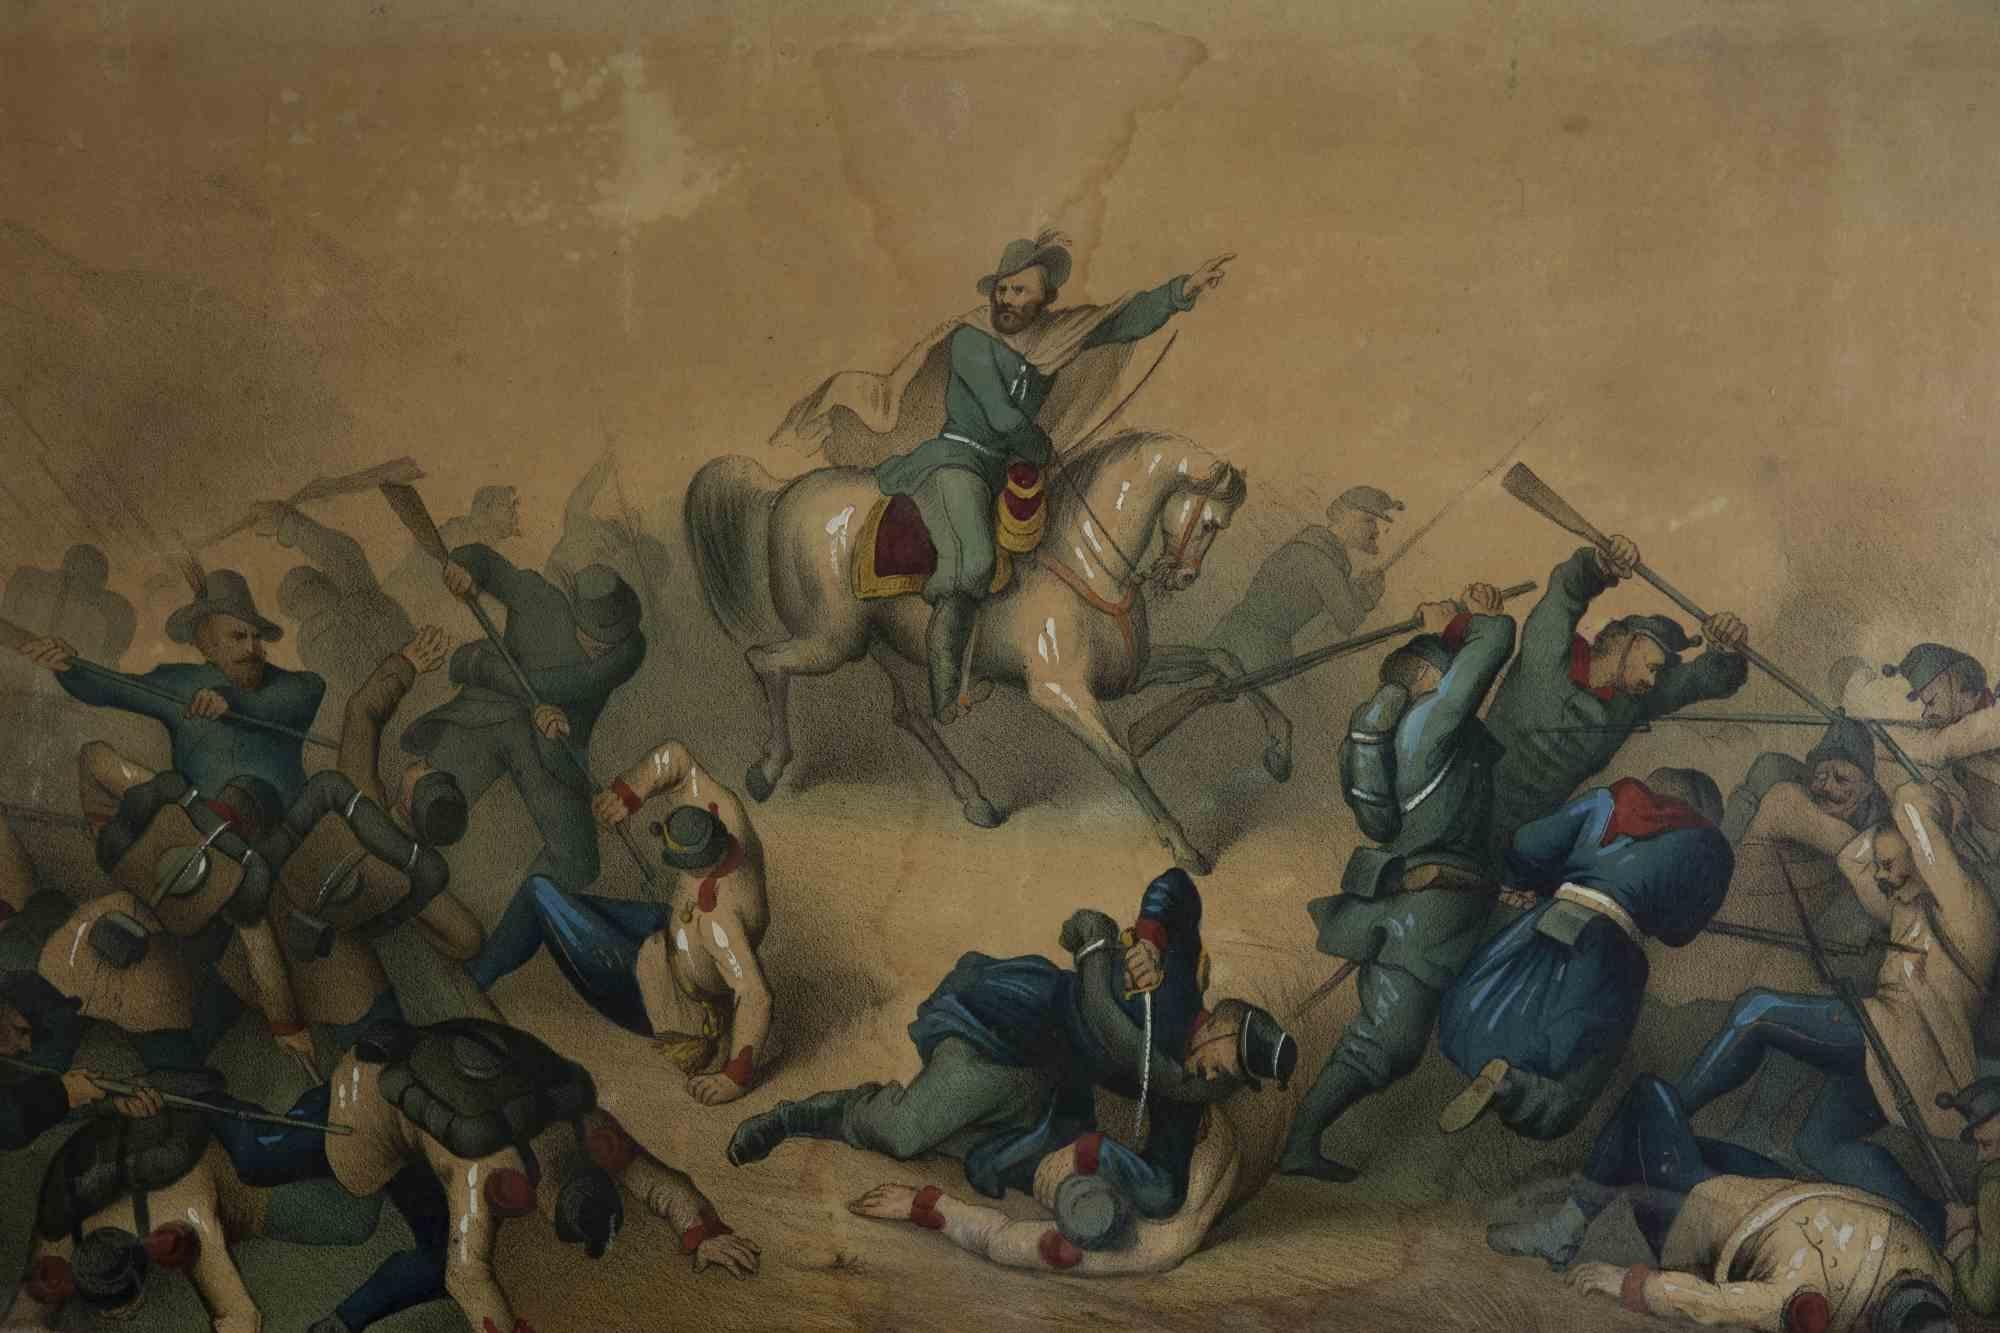 Unknown Figurative Print - Garibaldi in the Battle - Original Lithograph Retouché - 19th Century